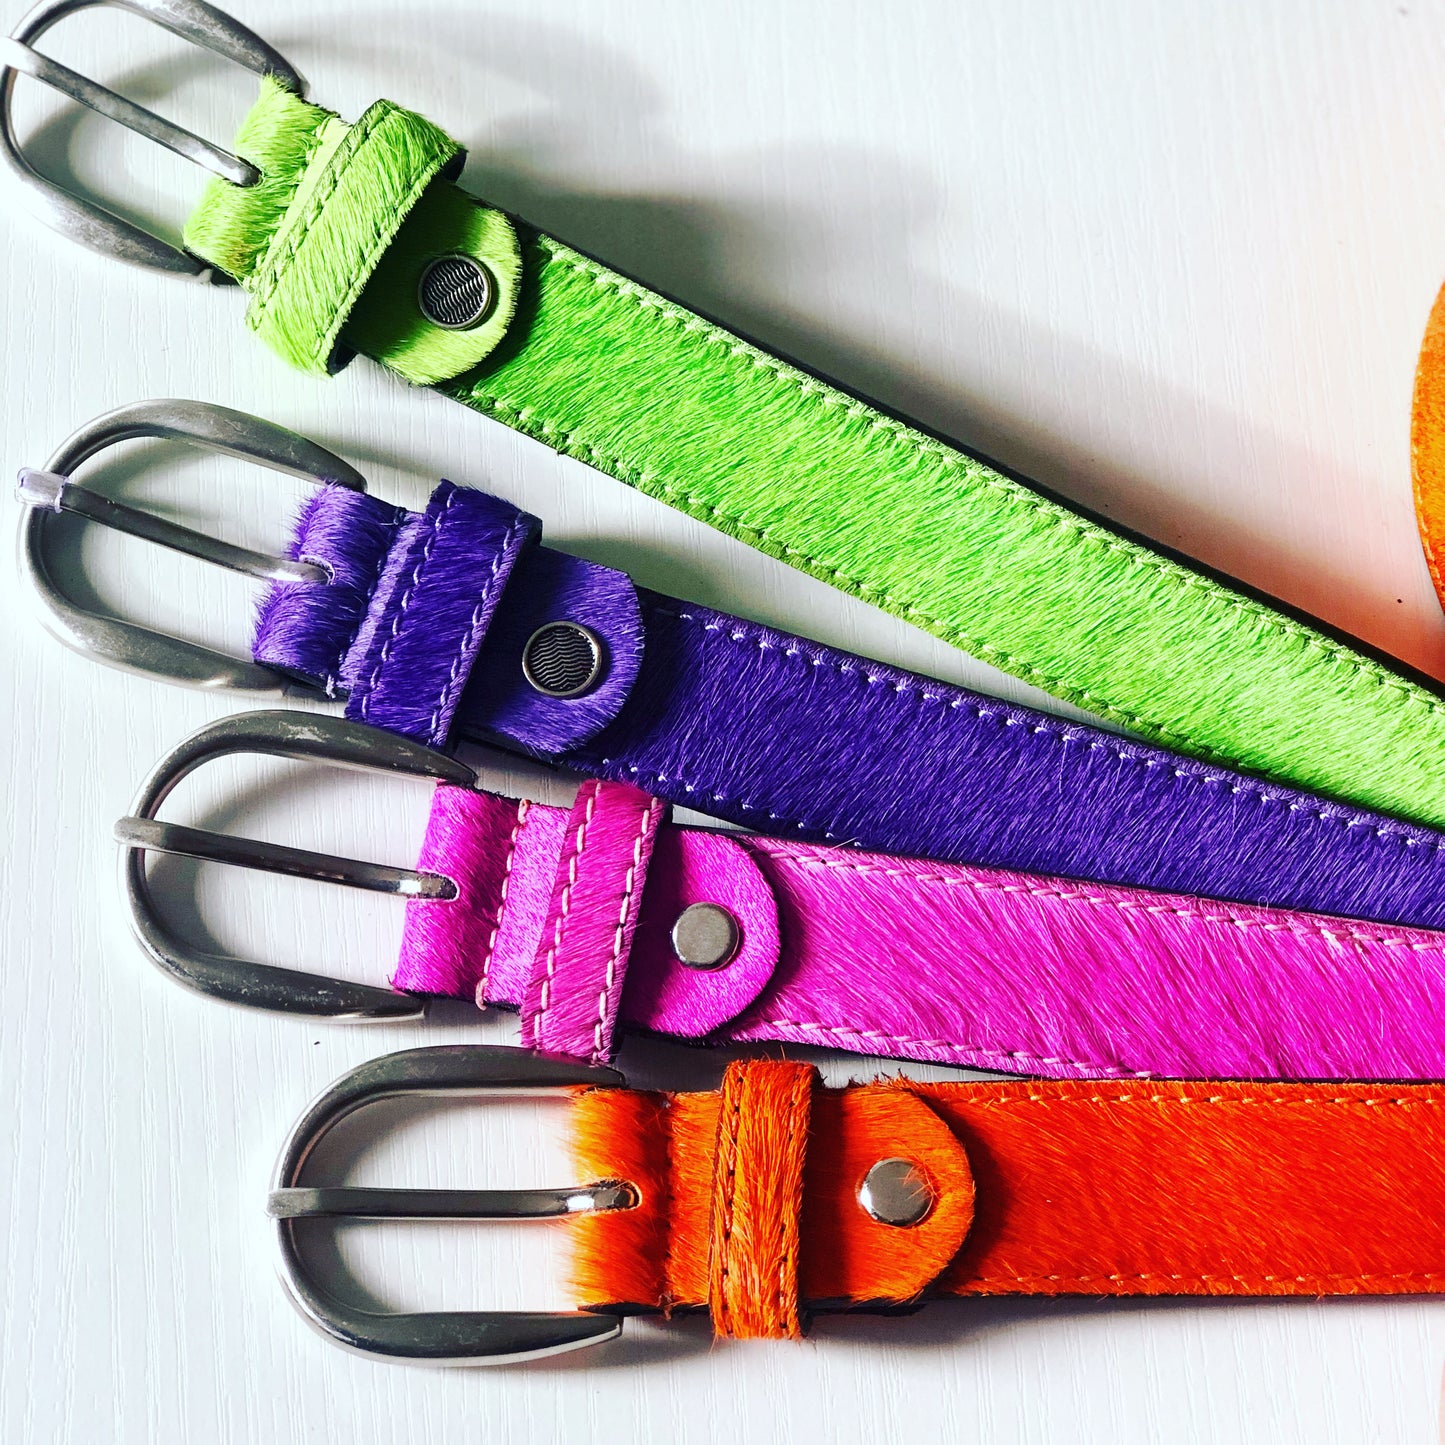 Orange, Pink, Apple Green, Purple Leather Belt for Women